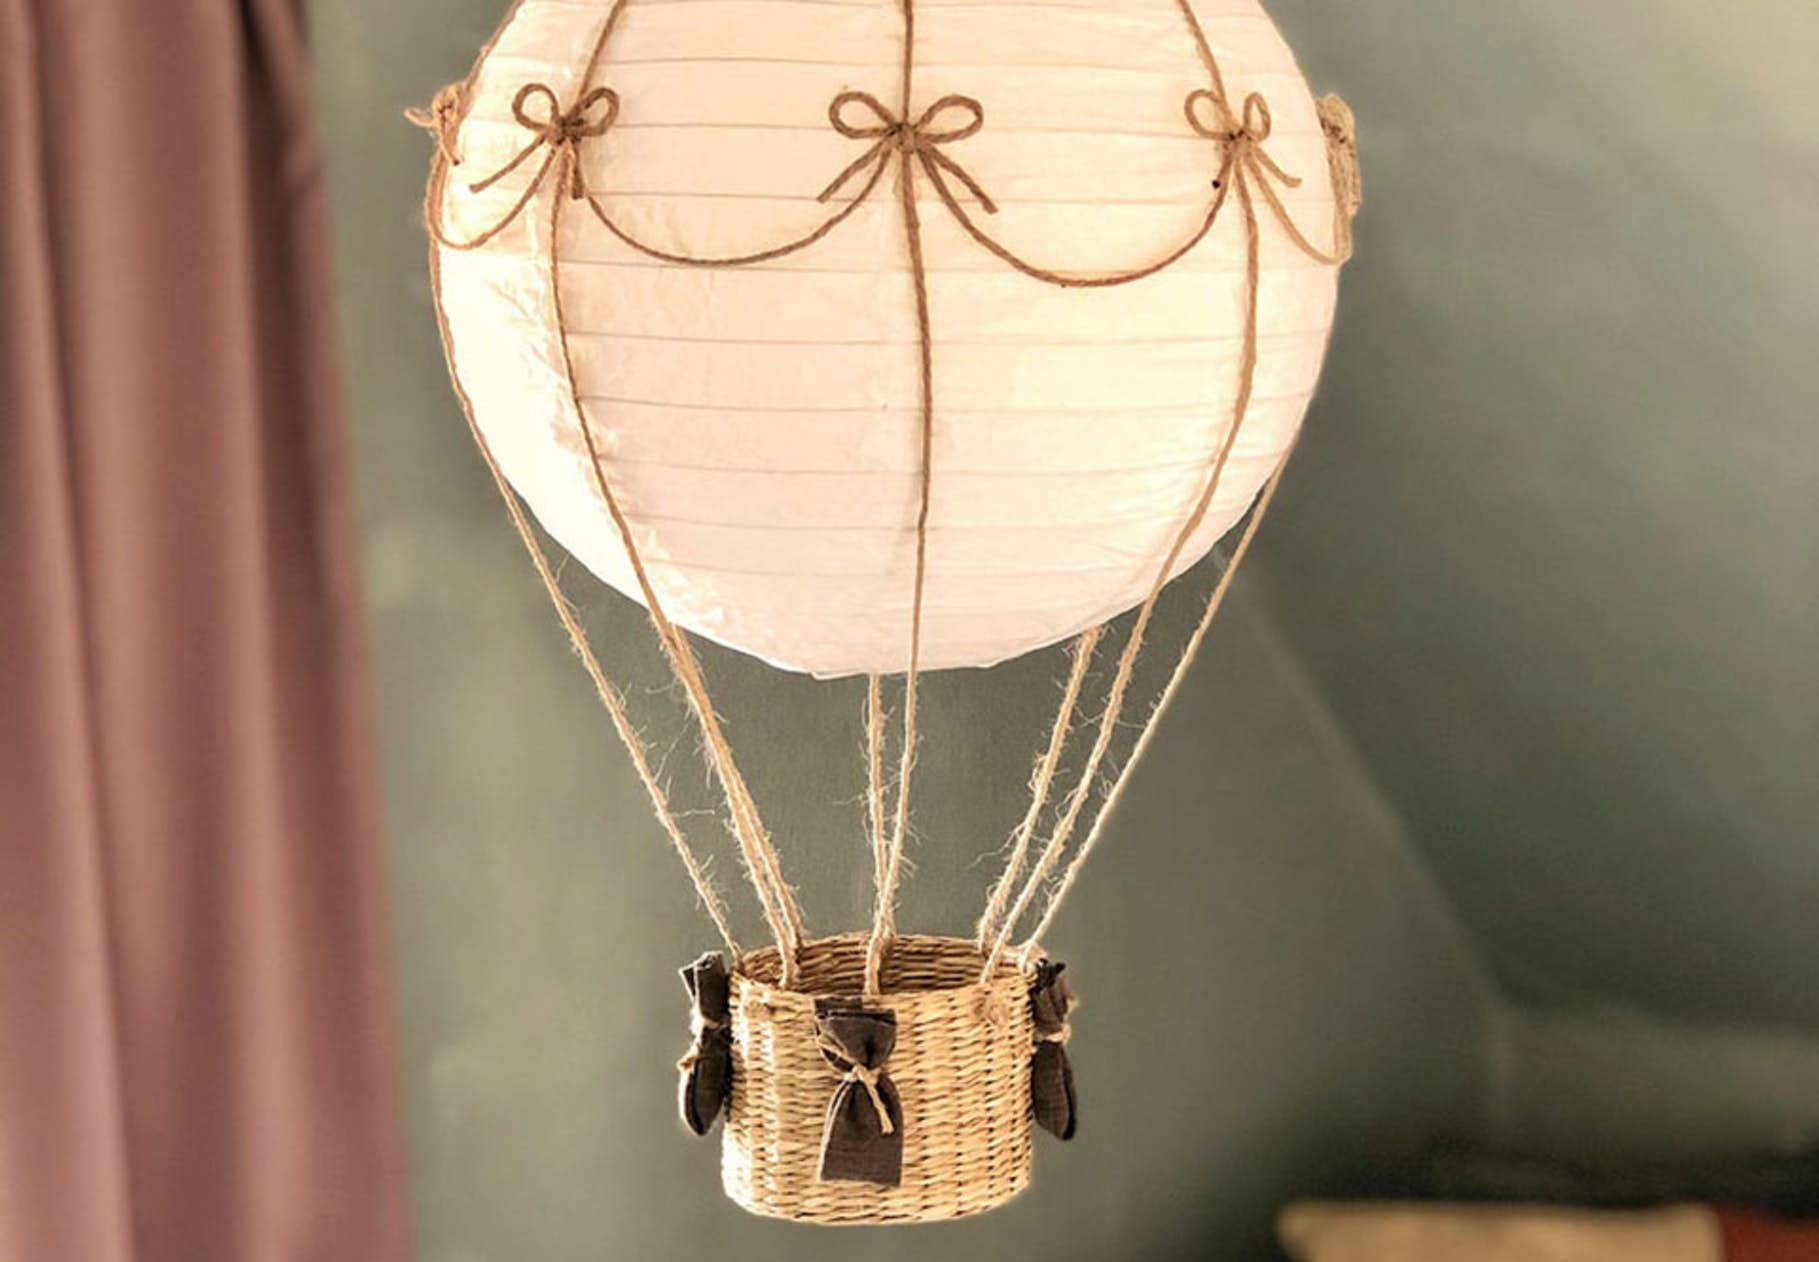 Tự làm chiếc đèn trang trí lấy cảm hứng từ khinh khí cầu tuyệt đẹp.